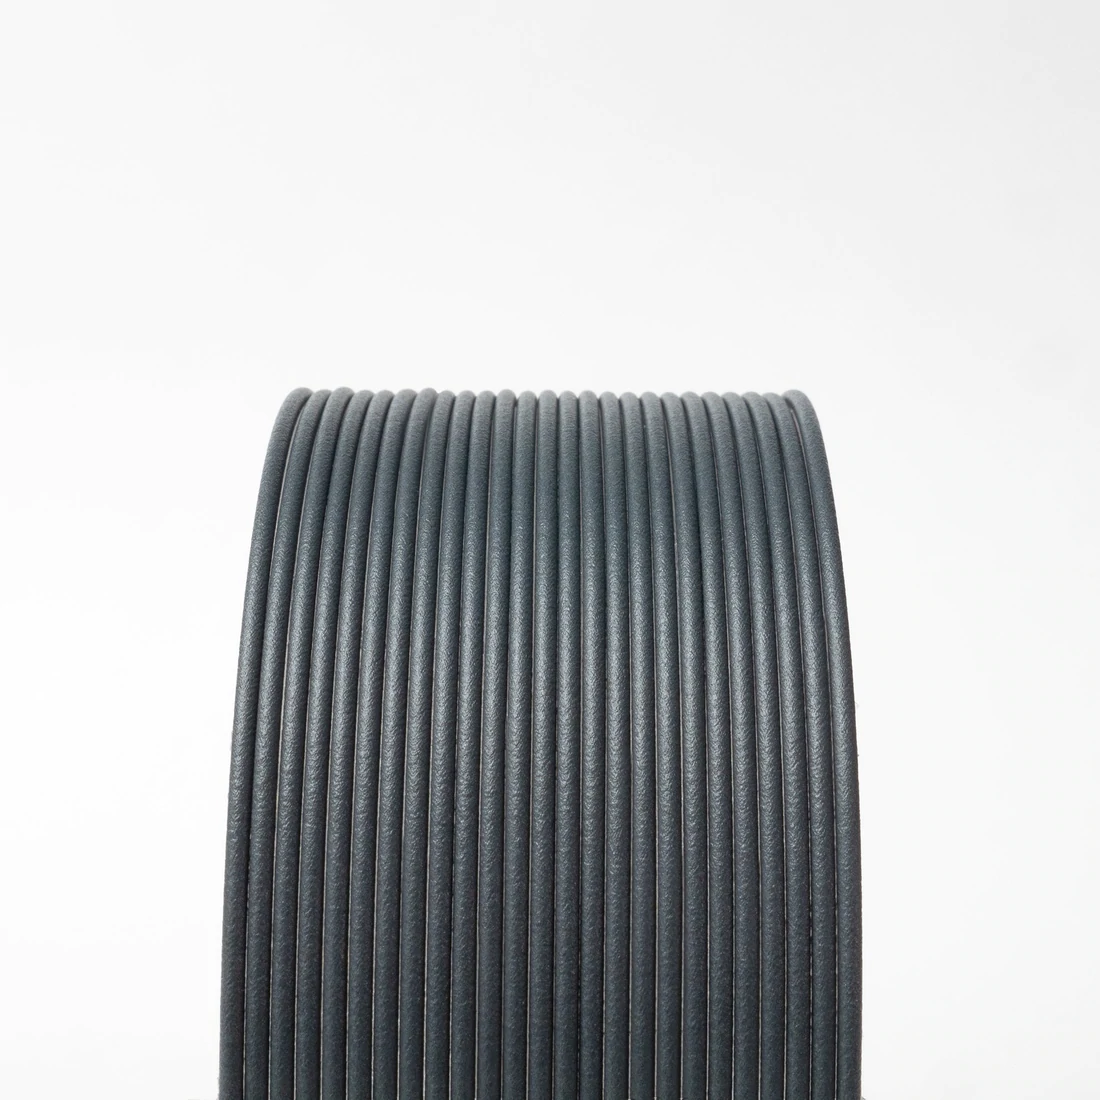 High Temp Dark Grey Carbon Fibre PLA 1.75mm